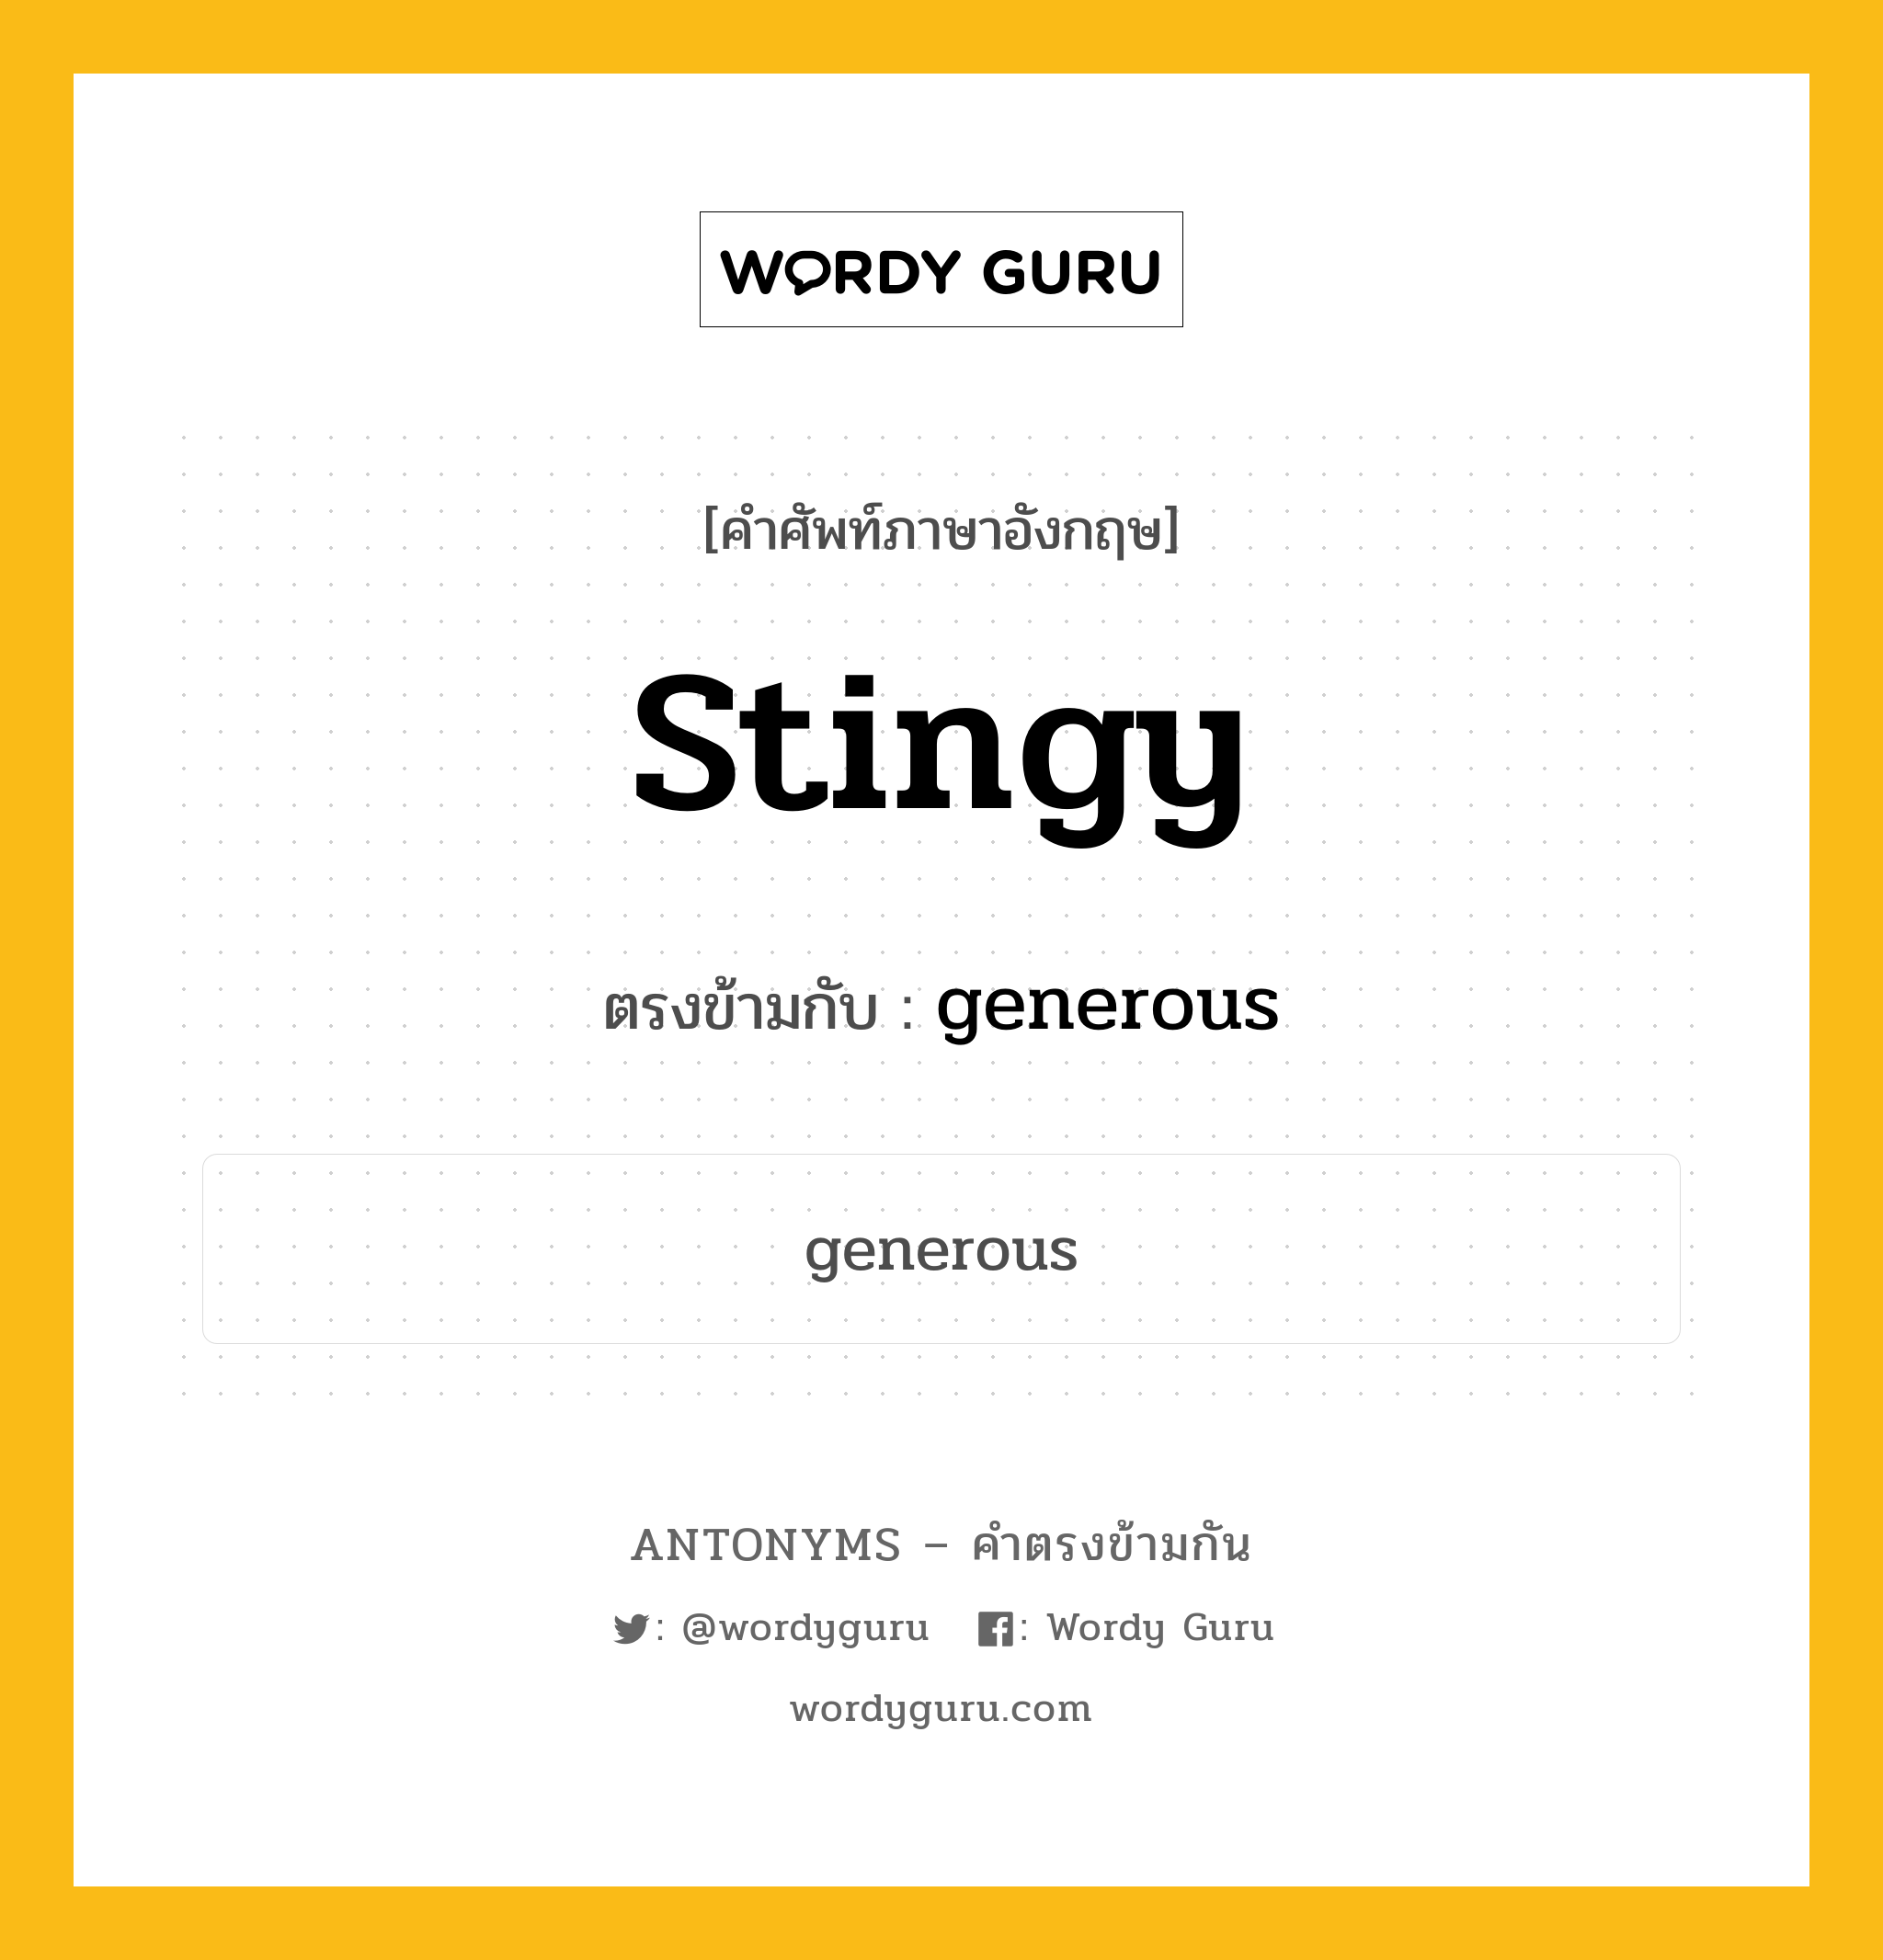 stingy เป็นคำตรงข้ามกับคำไหนบ้าง?, คำศัพท์ภาษาอังกฤษ stingy ตรงข้ามกับ generous หมวด generous